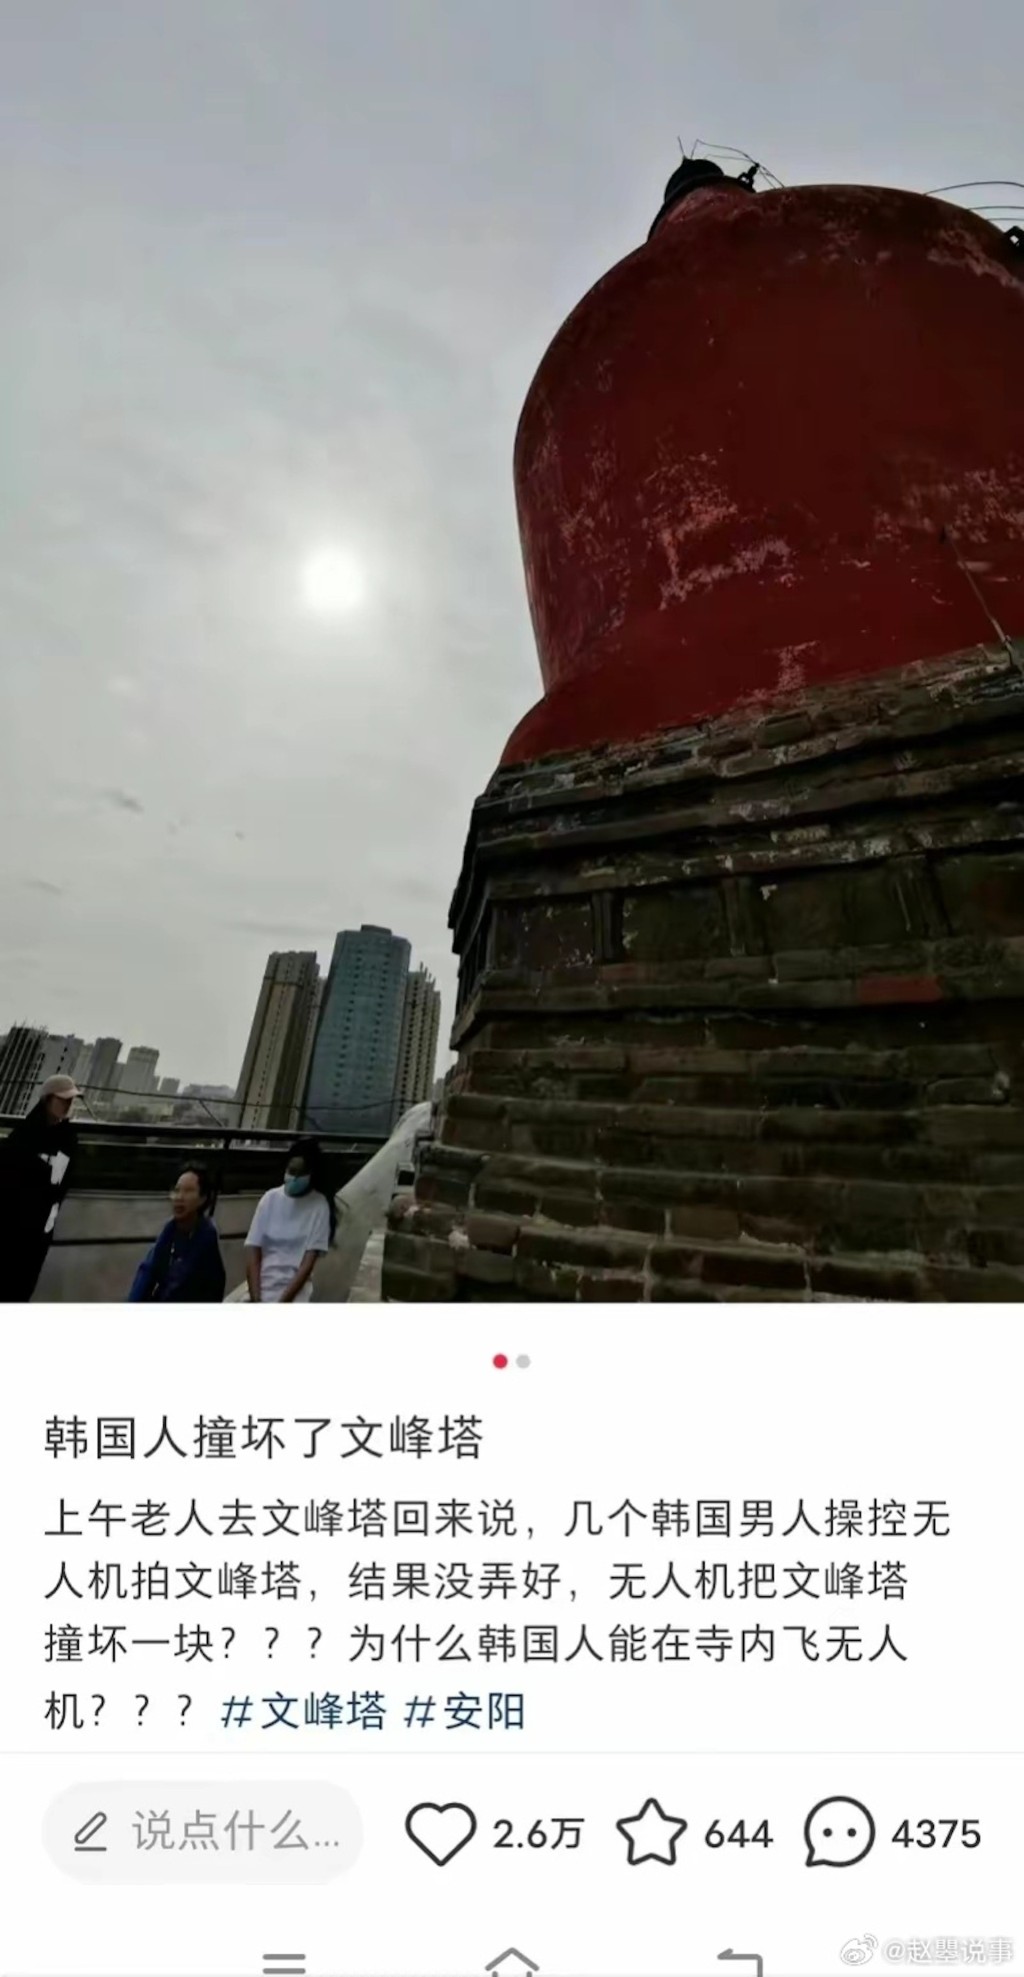 有網民反映河南文峰塔遭無人機刮碰，擔心對其構成損害。微博